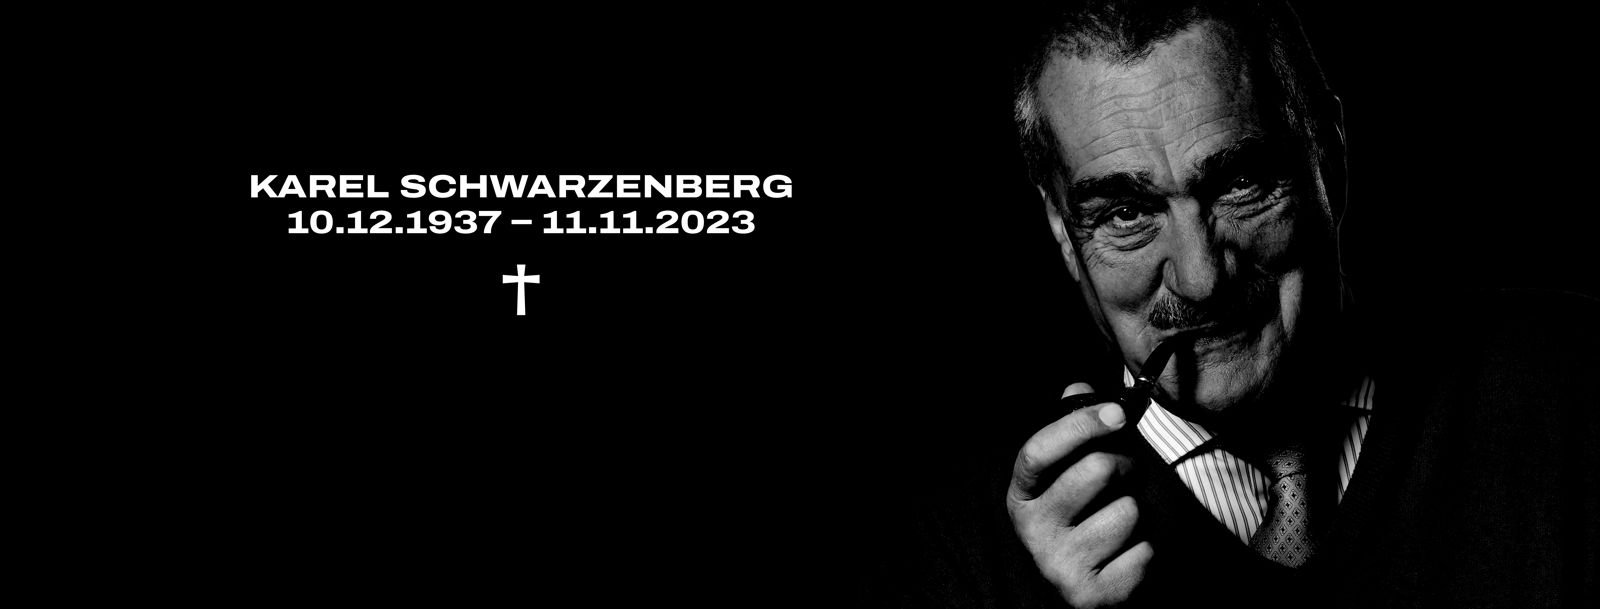 Zemřel Karel Schwarzenberg, občanští demokraté vzpomínají na jeho rozhled, zkušenosti i obrovskou velkorysost